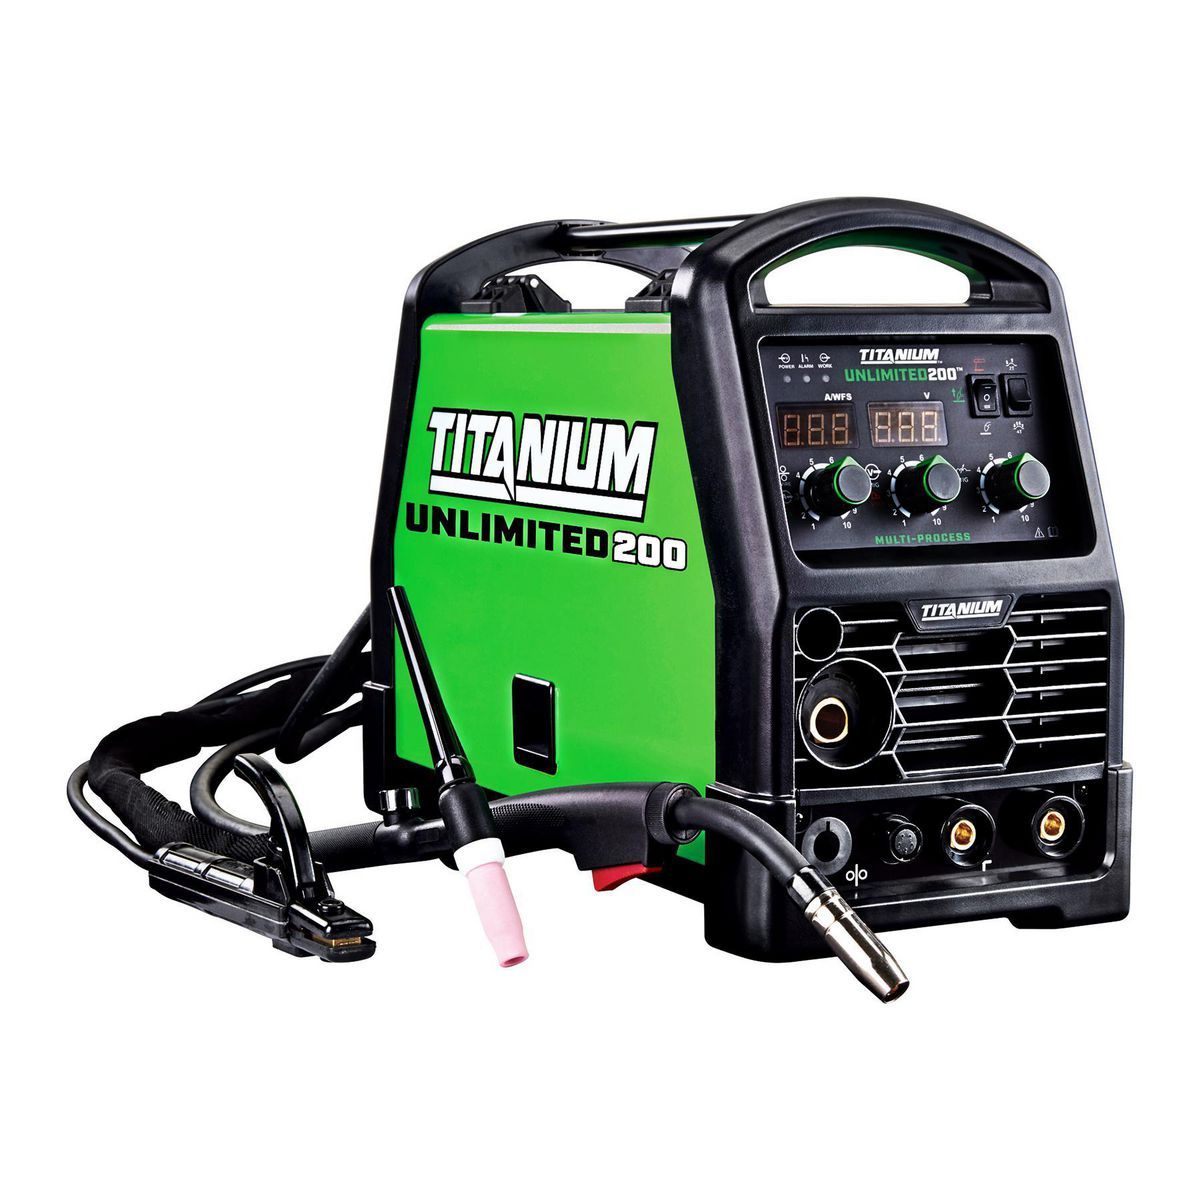 TITANIUM Unlimited 200™ Professional Multiprocess Welder